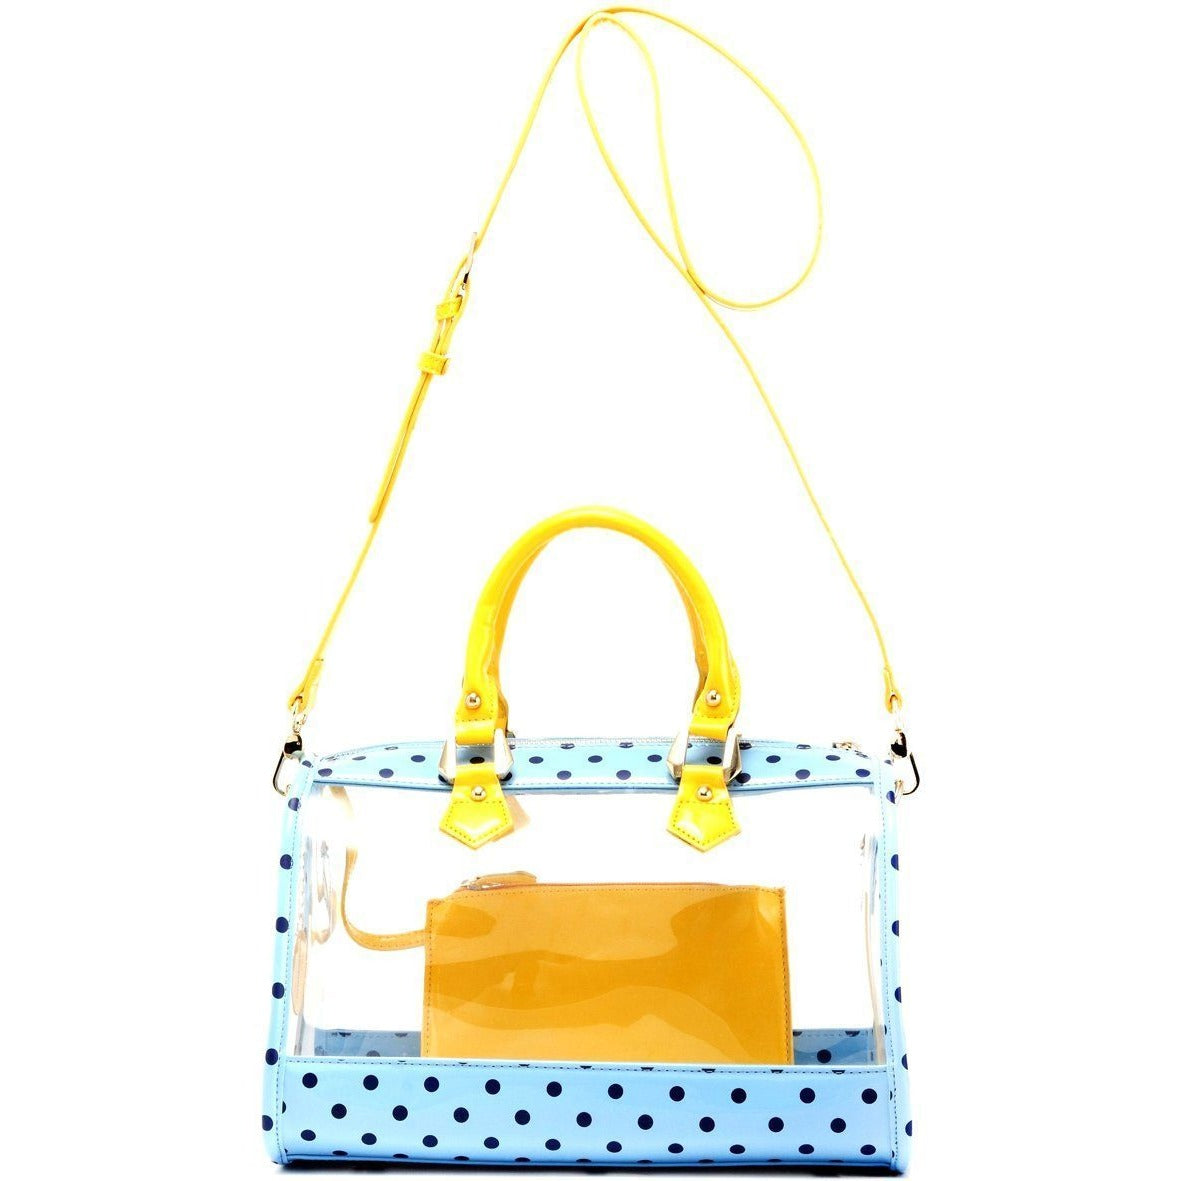 Buy Embelle Designer Handbag for Women's (Light Blue) at Amazon.in